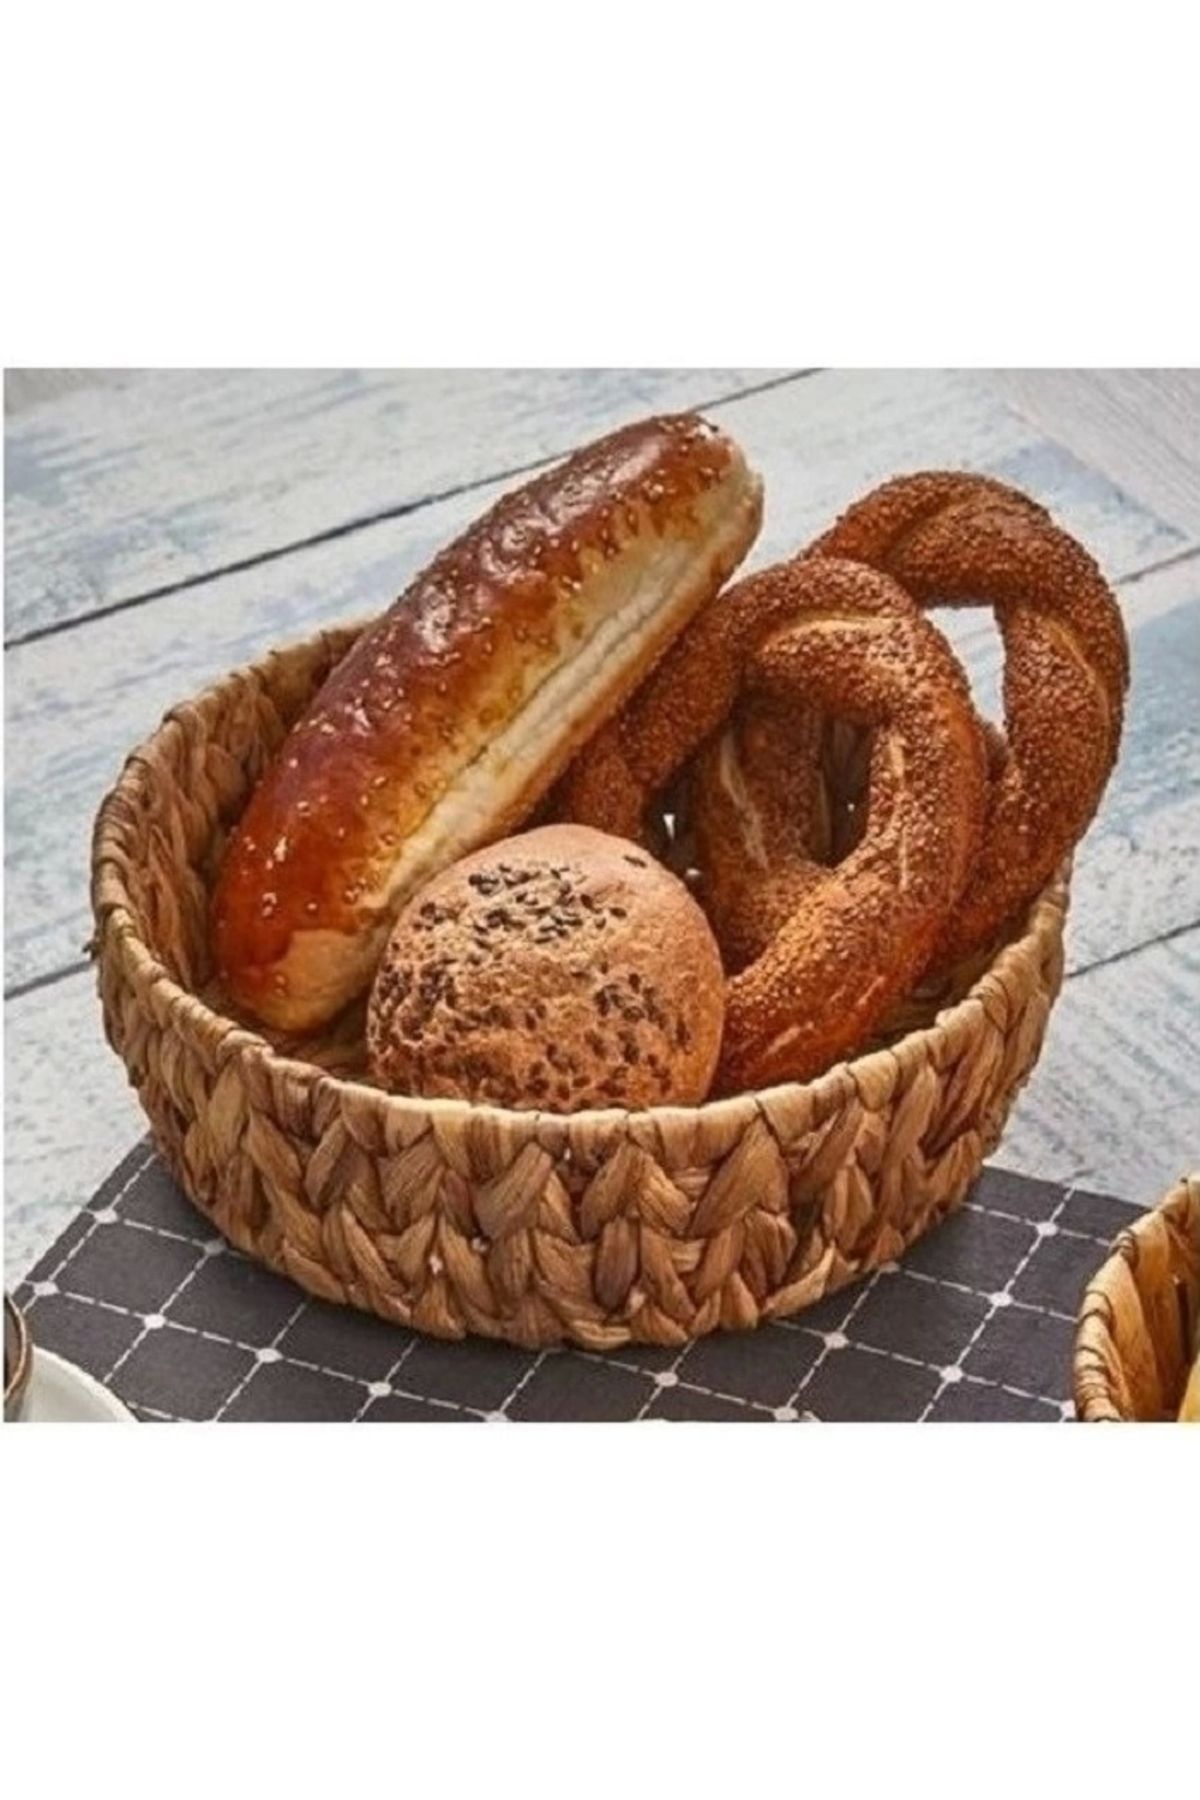 Evistro Yuvarlak Bombeli Hasır Ekmek ve Meyve Sepeti Düzenleyici 29x9cm